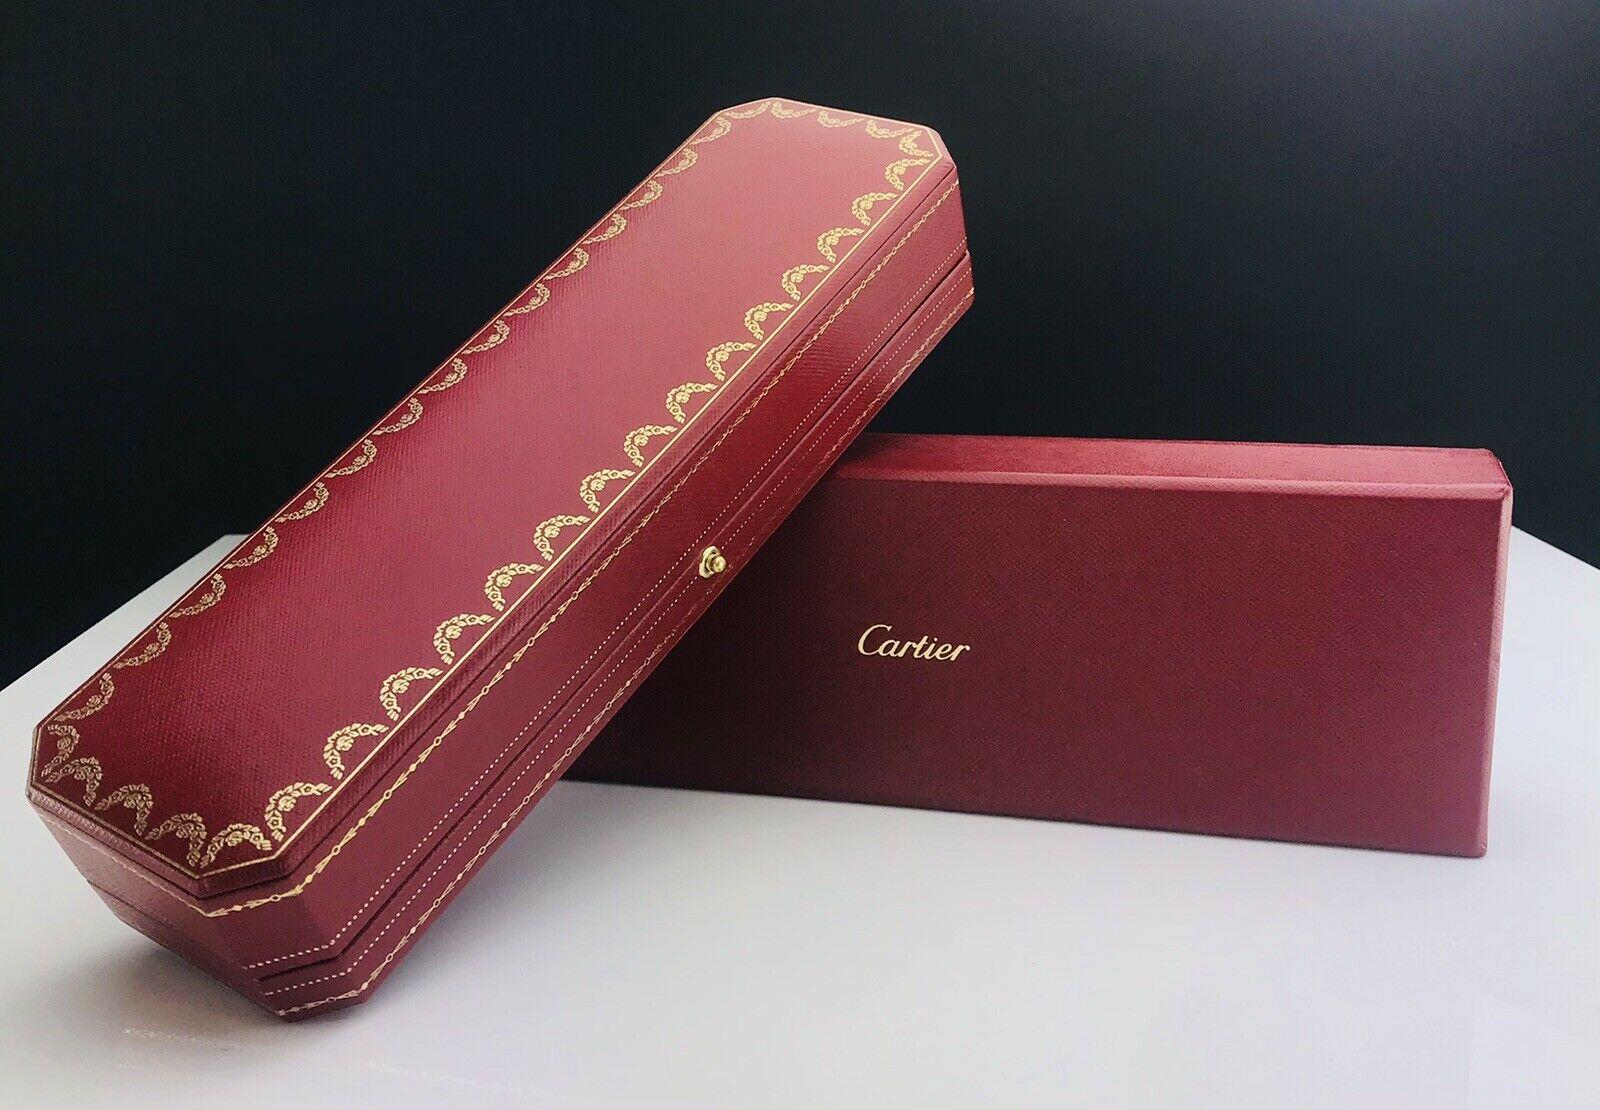 Cartier Armband/Uhr Präsentationsbox & Außenbox

Abmessungen: Länge 24cm x Breite 7,5cm x Höhe 5cm

Zustand: Allgemeiner Gebrauchtzustand, mit einigen Oberflächenabnutzungen, ansonsten guter Gesamtzustand. Äußere Box hat einige Kratzer, aber